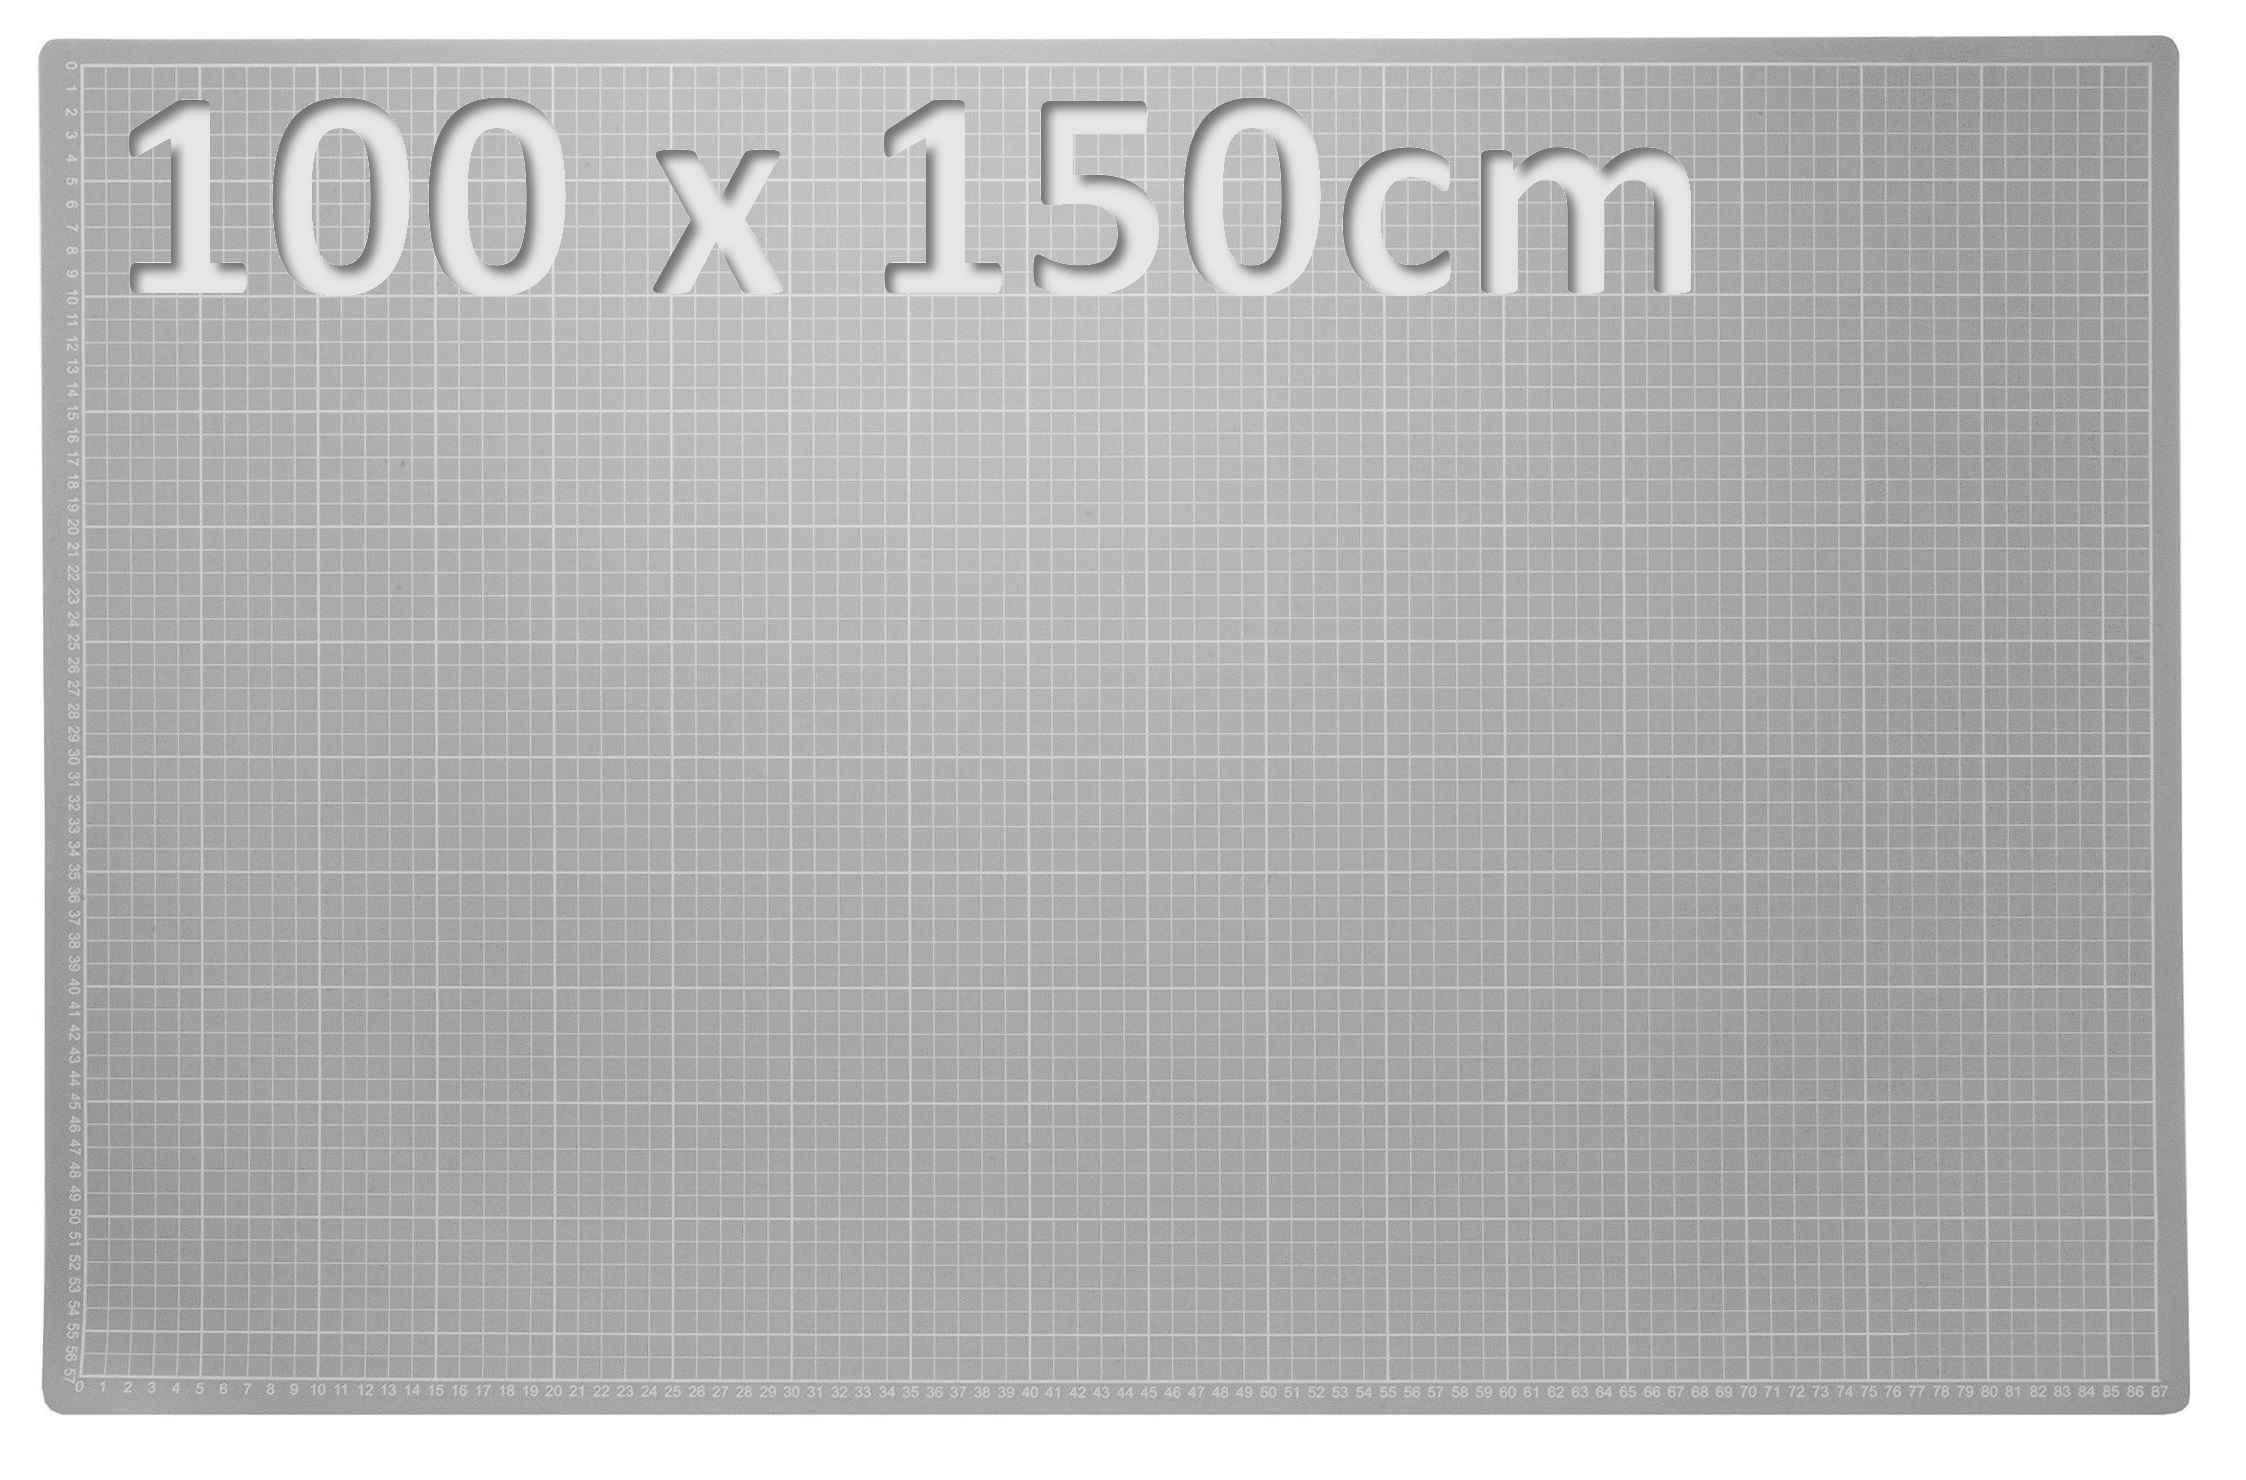 XXL Patchwork Schneidematte 100 x 150cm schwarz